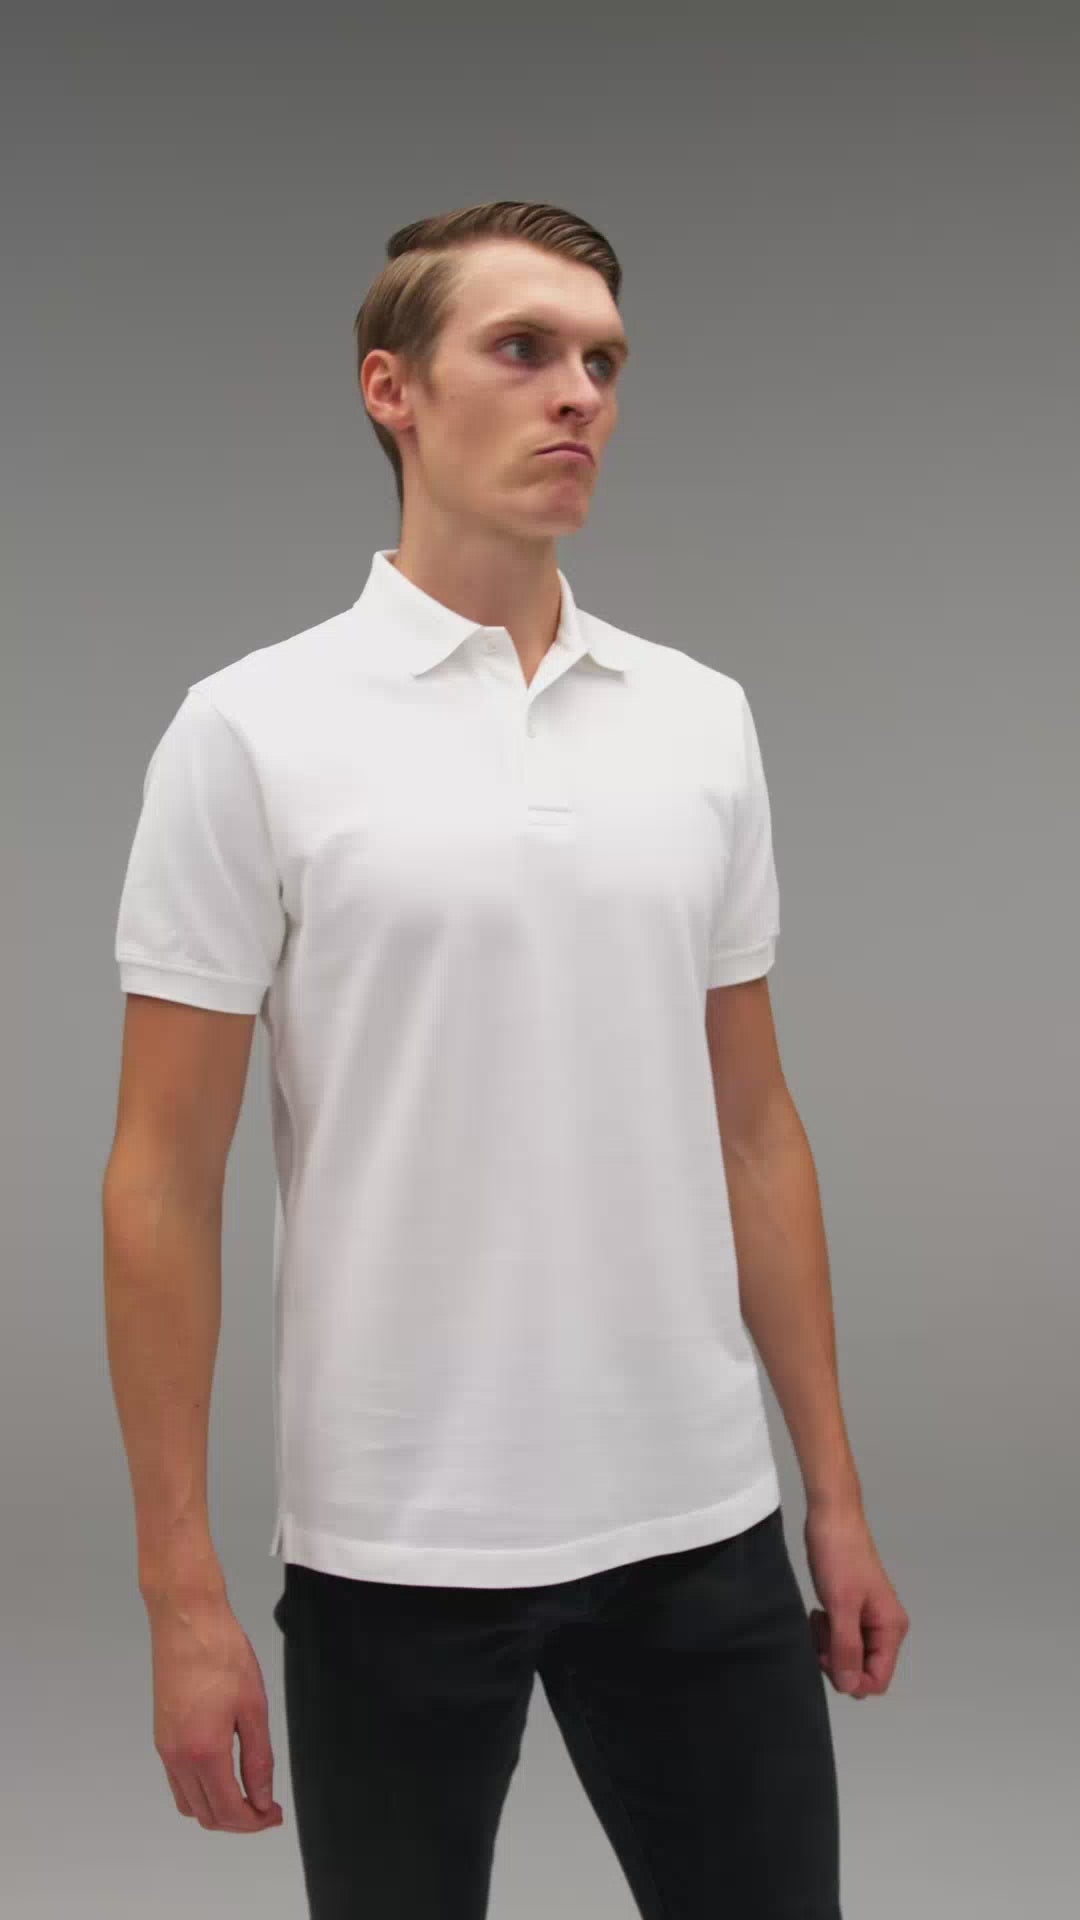 Produktvideo TALLFITS The Tall Polo - Weißes Poloshirt für große Männer